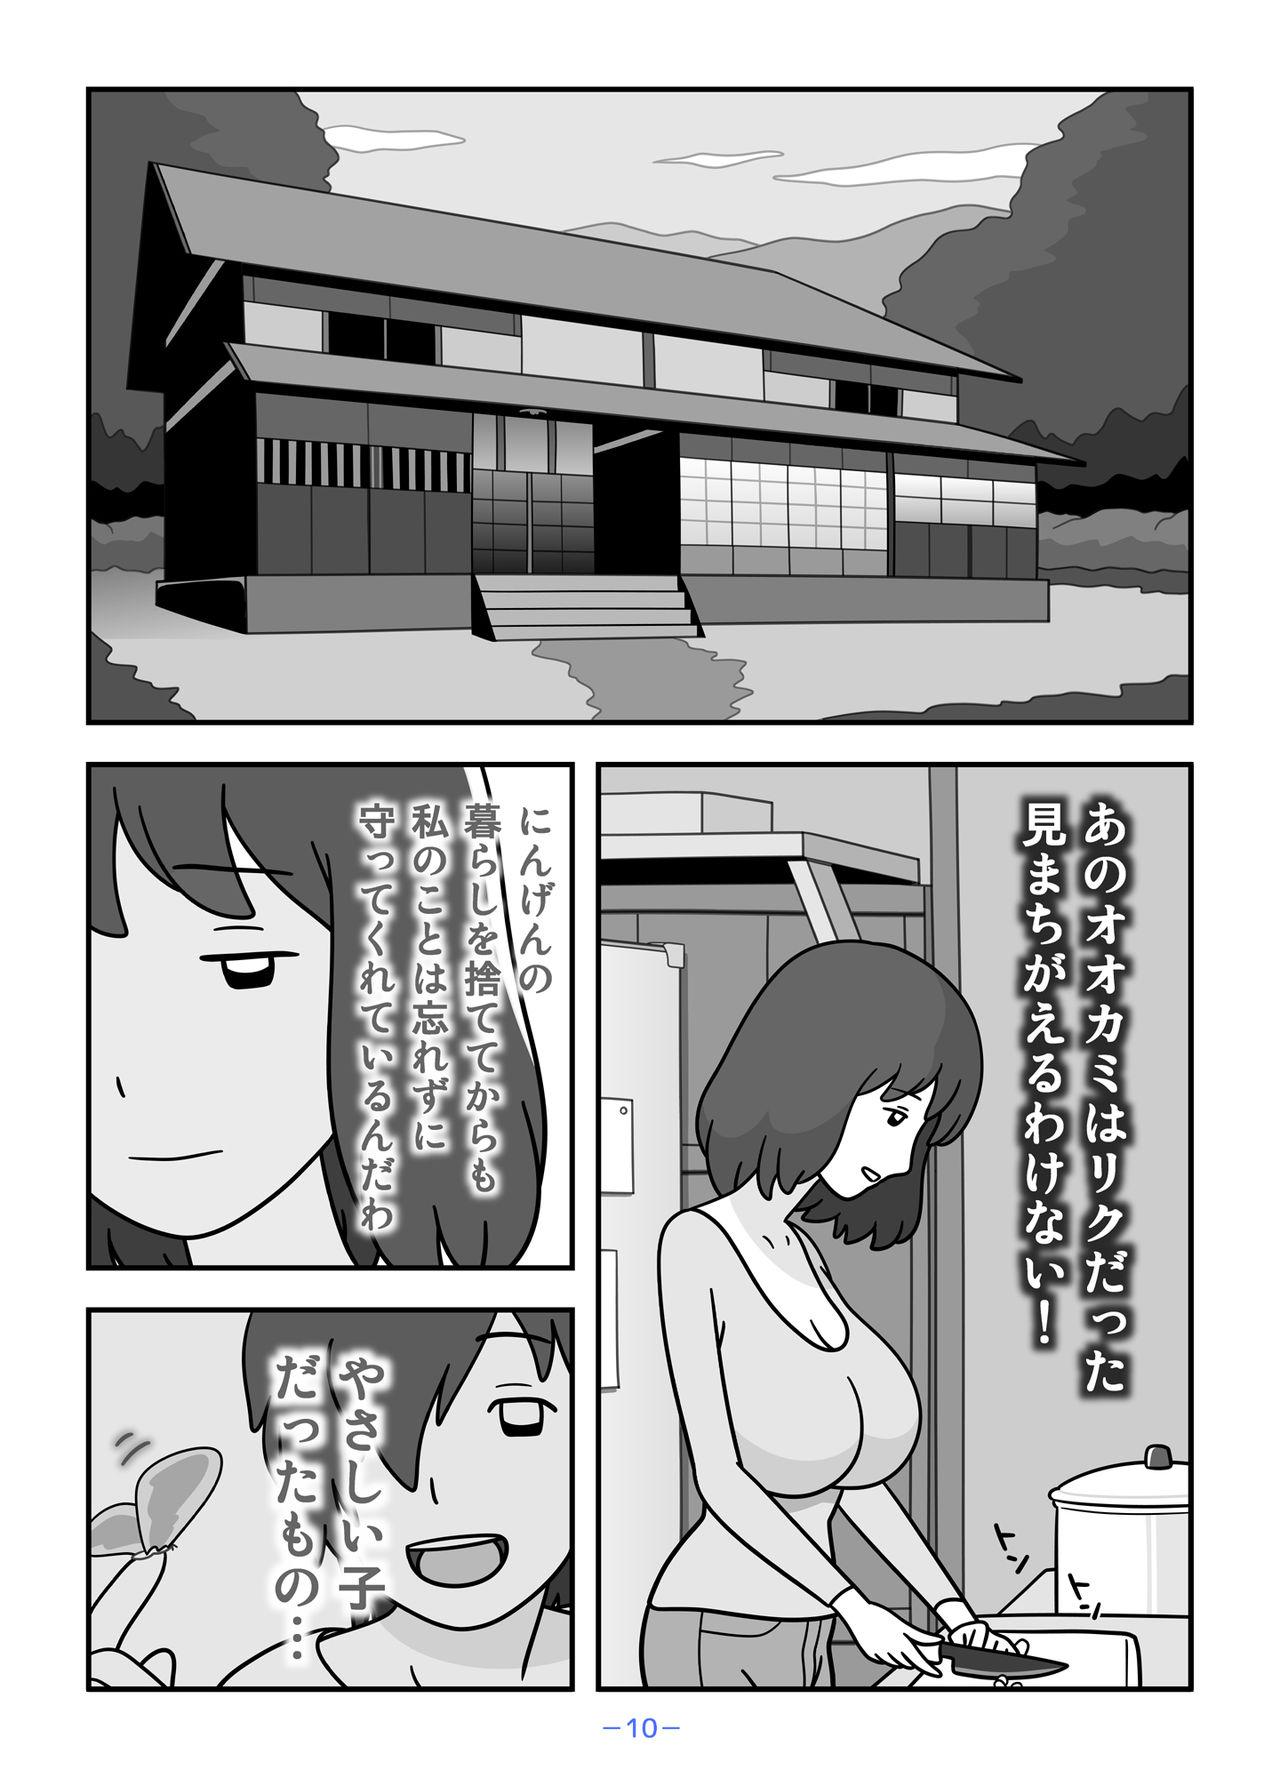 Dirty Jinrou no Haha Natsu - Original  - Page 10